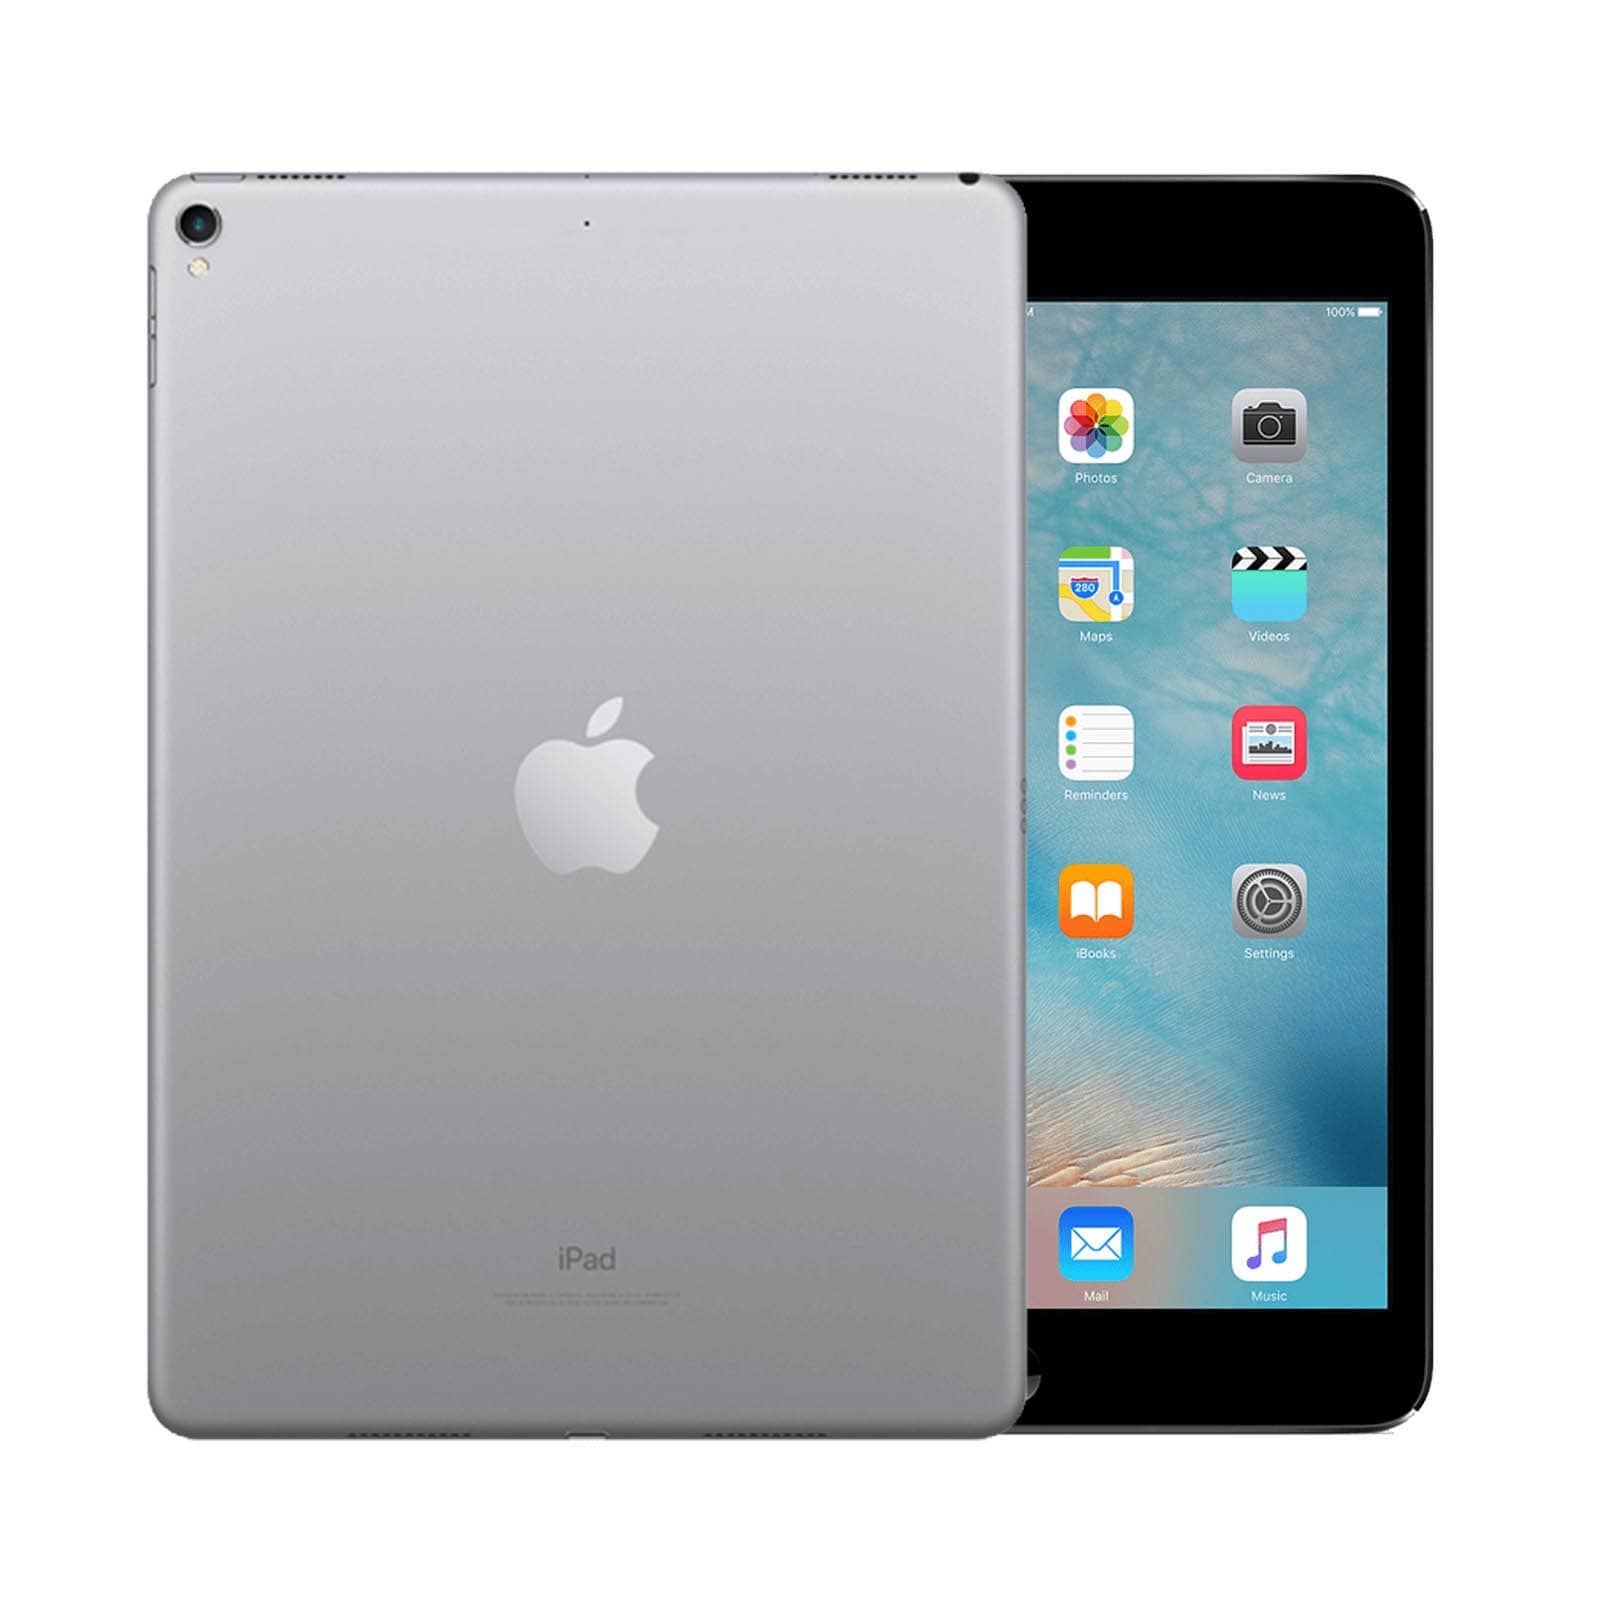 iPad Pro 9.7 Inch 256GB Space Grey Pristine - WiFi 256GB Space Grey Pristine